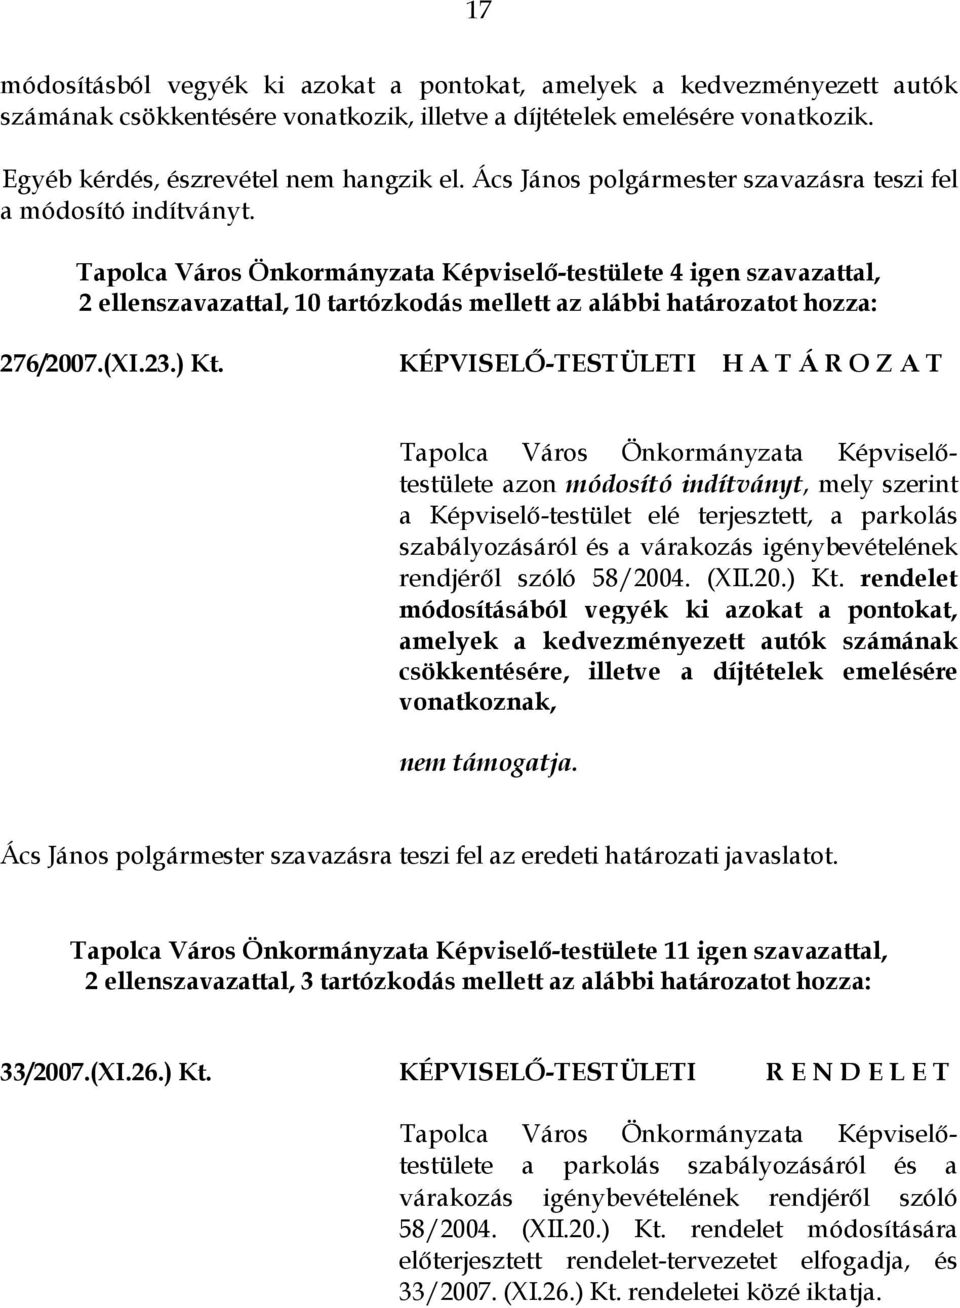 Tapolca Város Önkormányzata Képviselő-testülete 4 igen szavazattal, 2 ellenszavazattal, 10 tartózkodás mellett az alábbi határozatot hozza: 276/2007.(XI.23.) Kt.